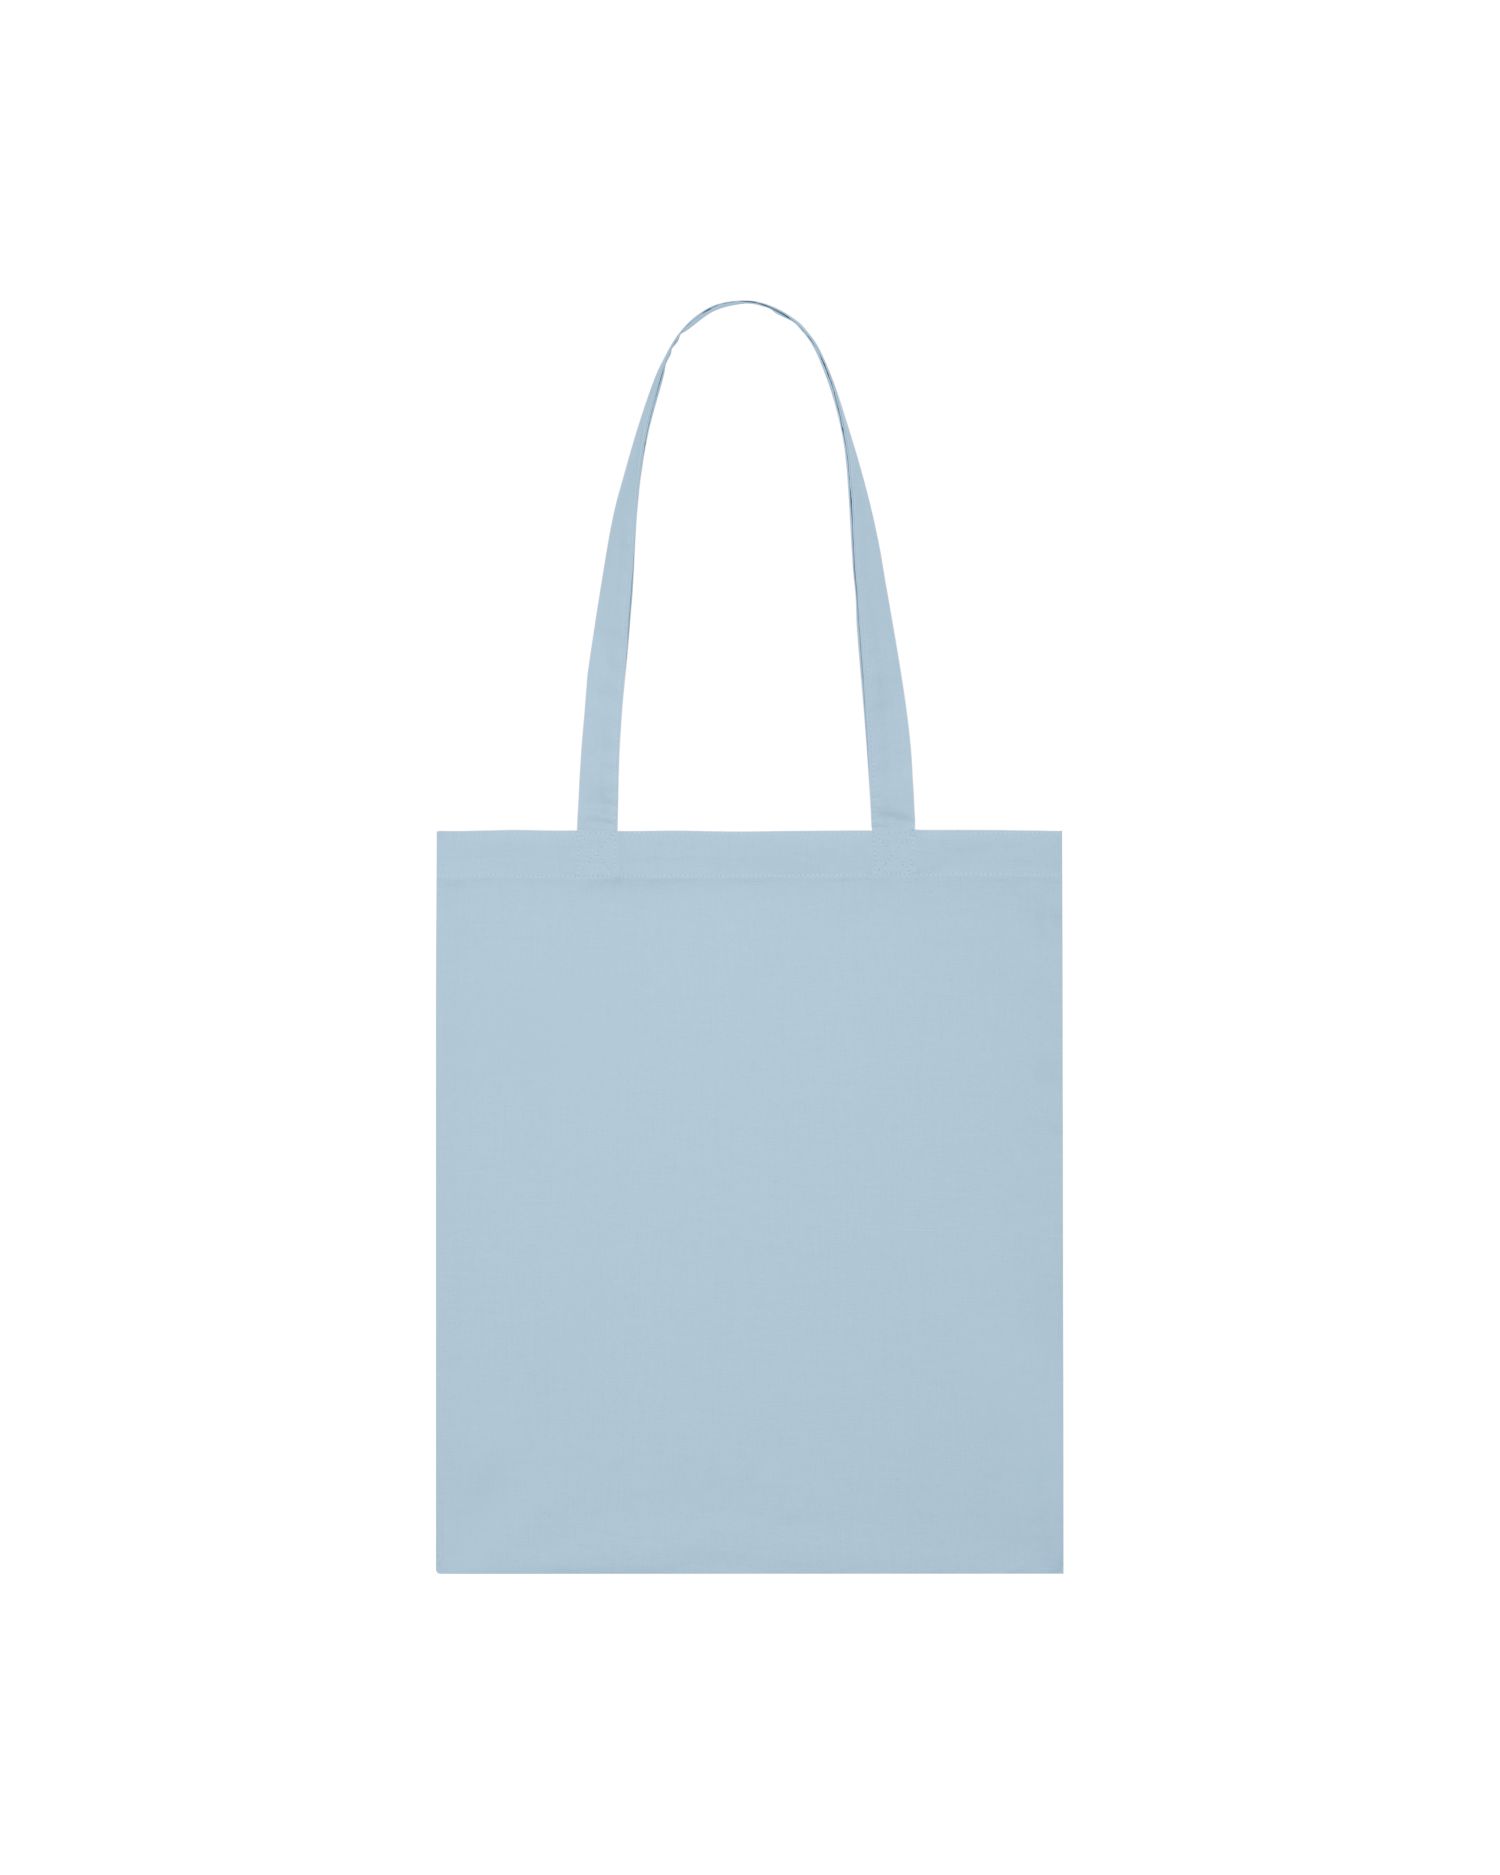  Light Tote Bag in Farbe Sky blue